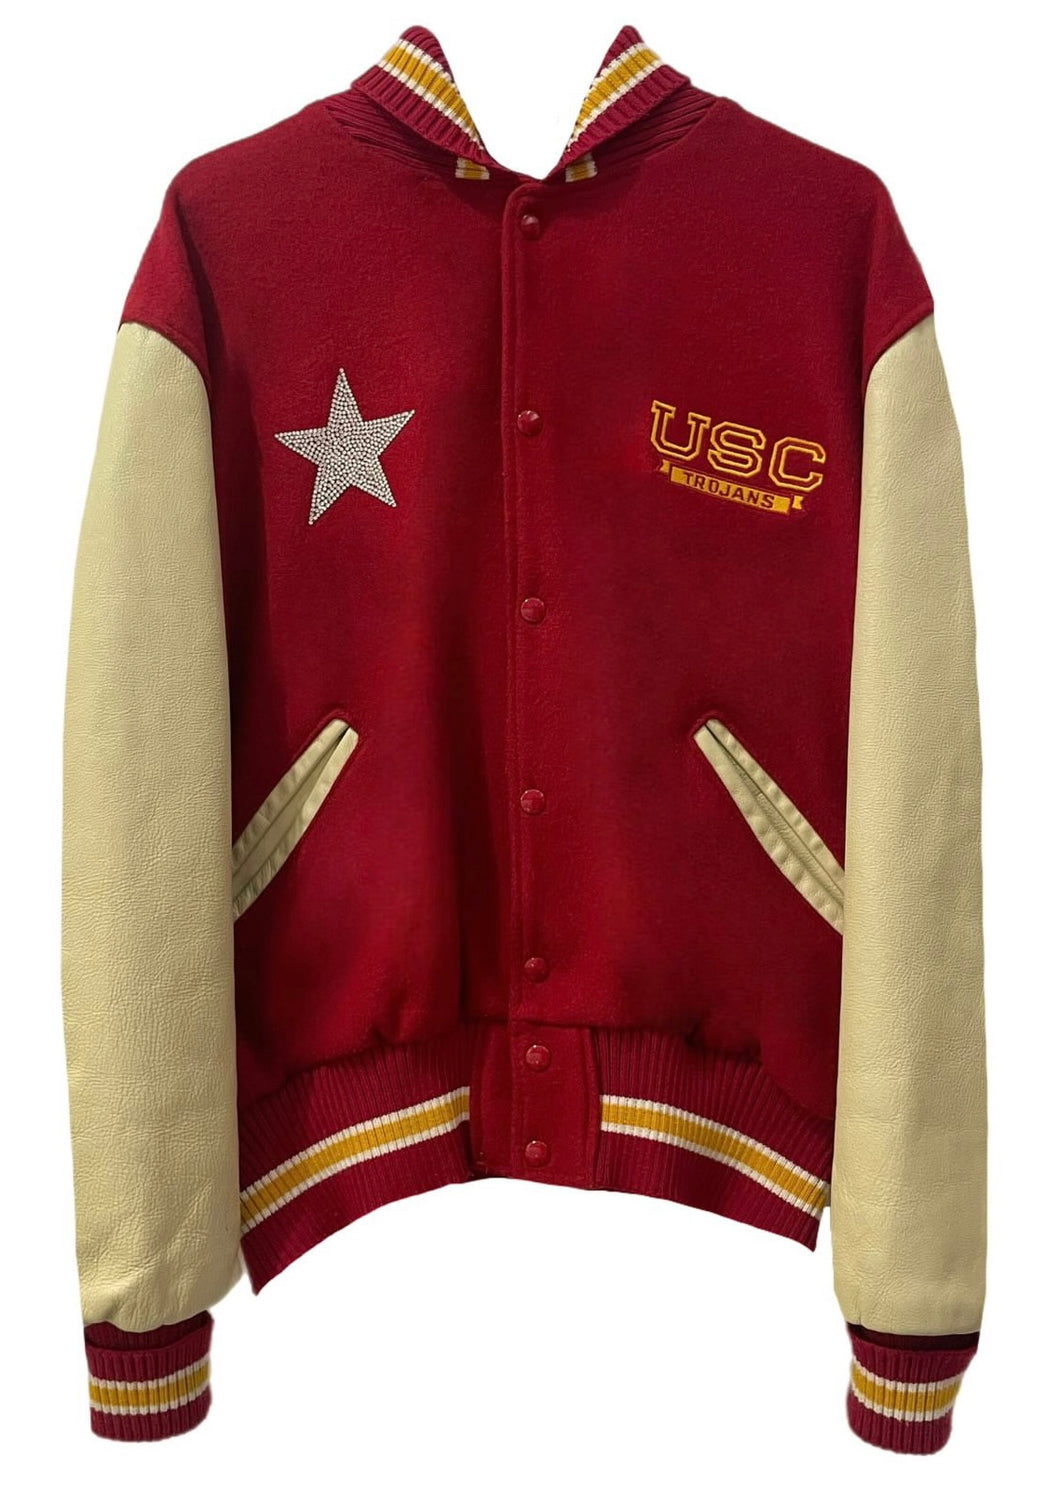 USC Trojans Varsity Jacket | USC Trojans Jacket